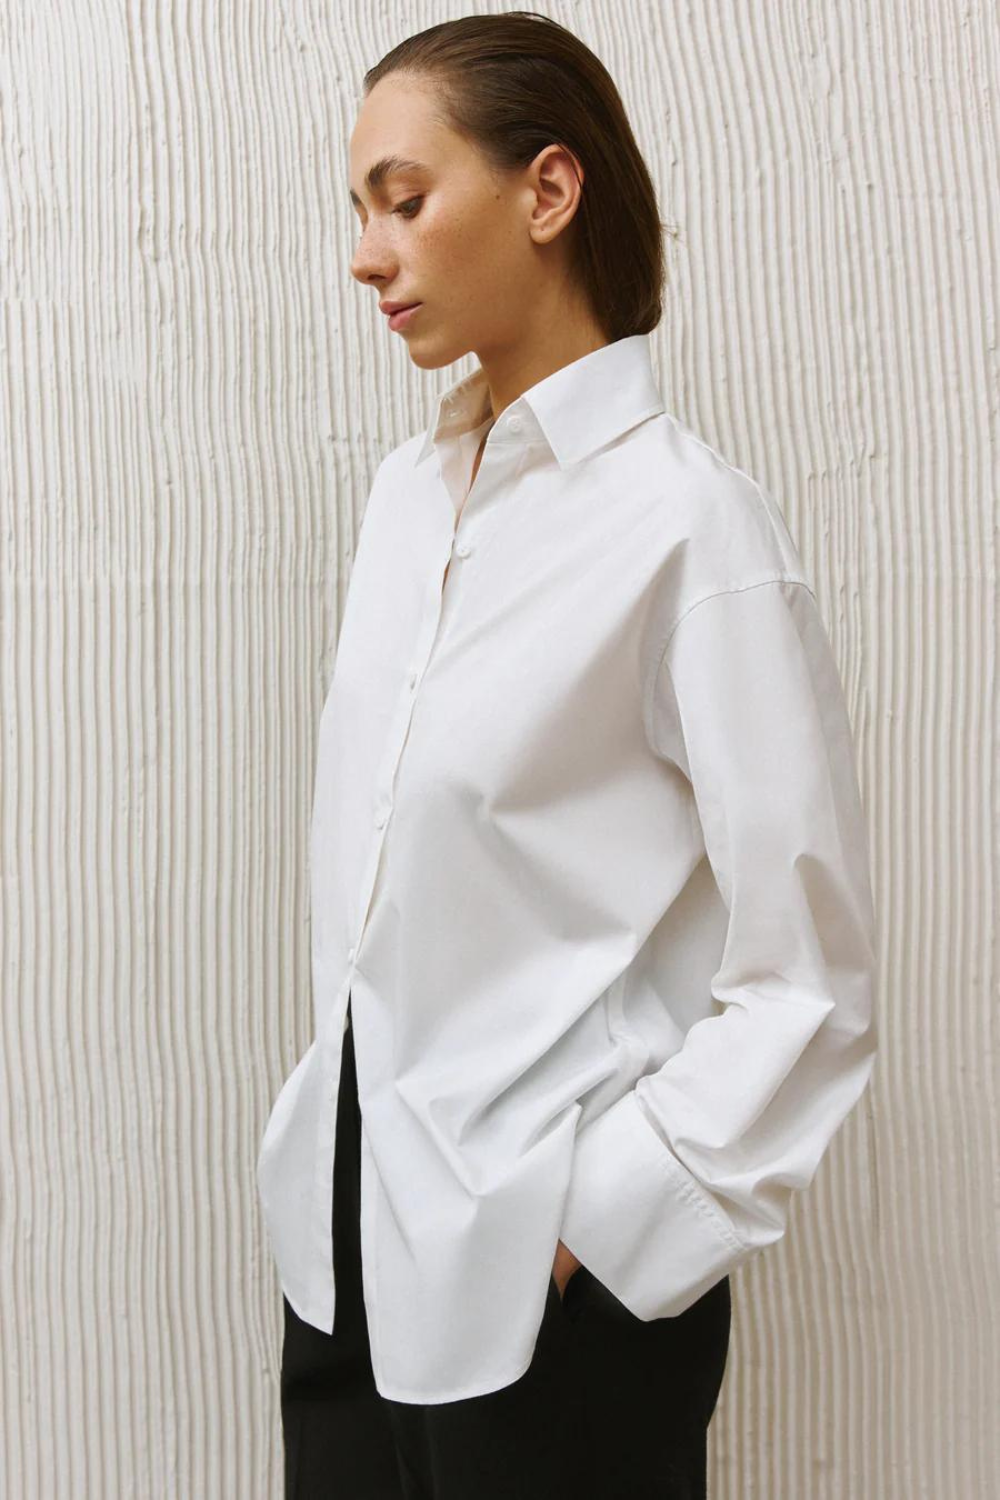 Класична біла сорочка, Біла, (IvaRych), IR_00011